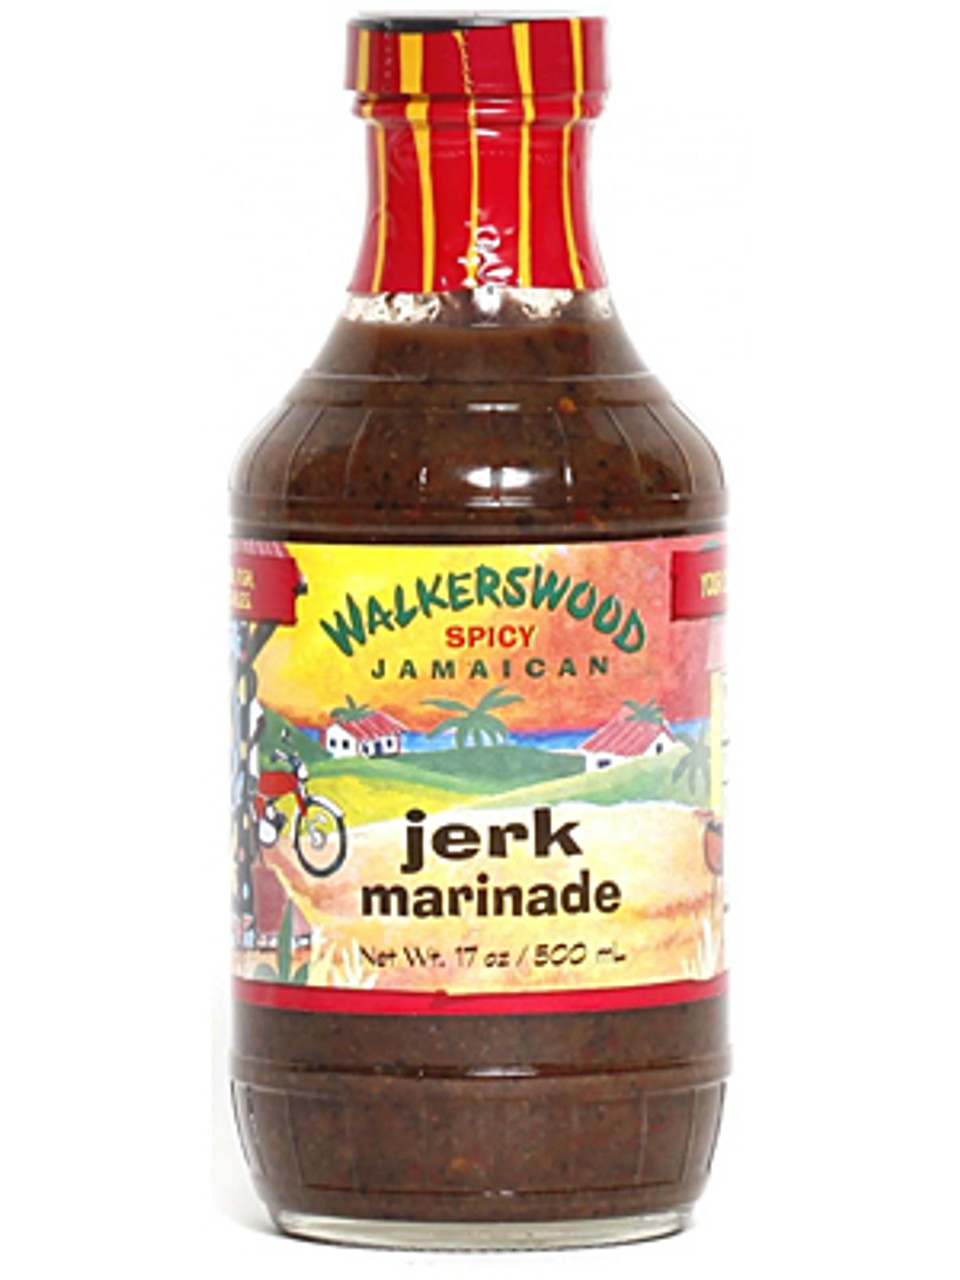 Walkerswood Spicy Jamaican Jerk Marinade